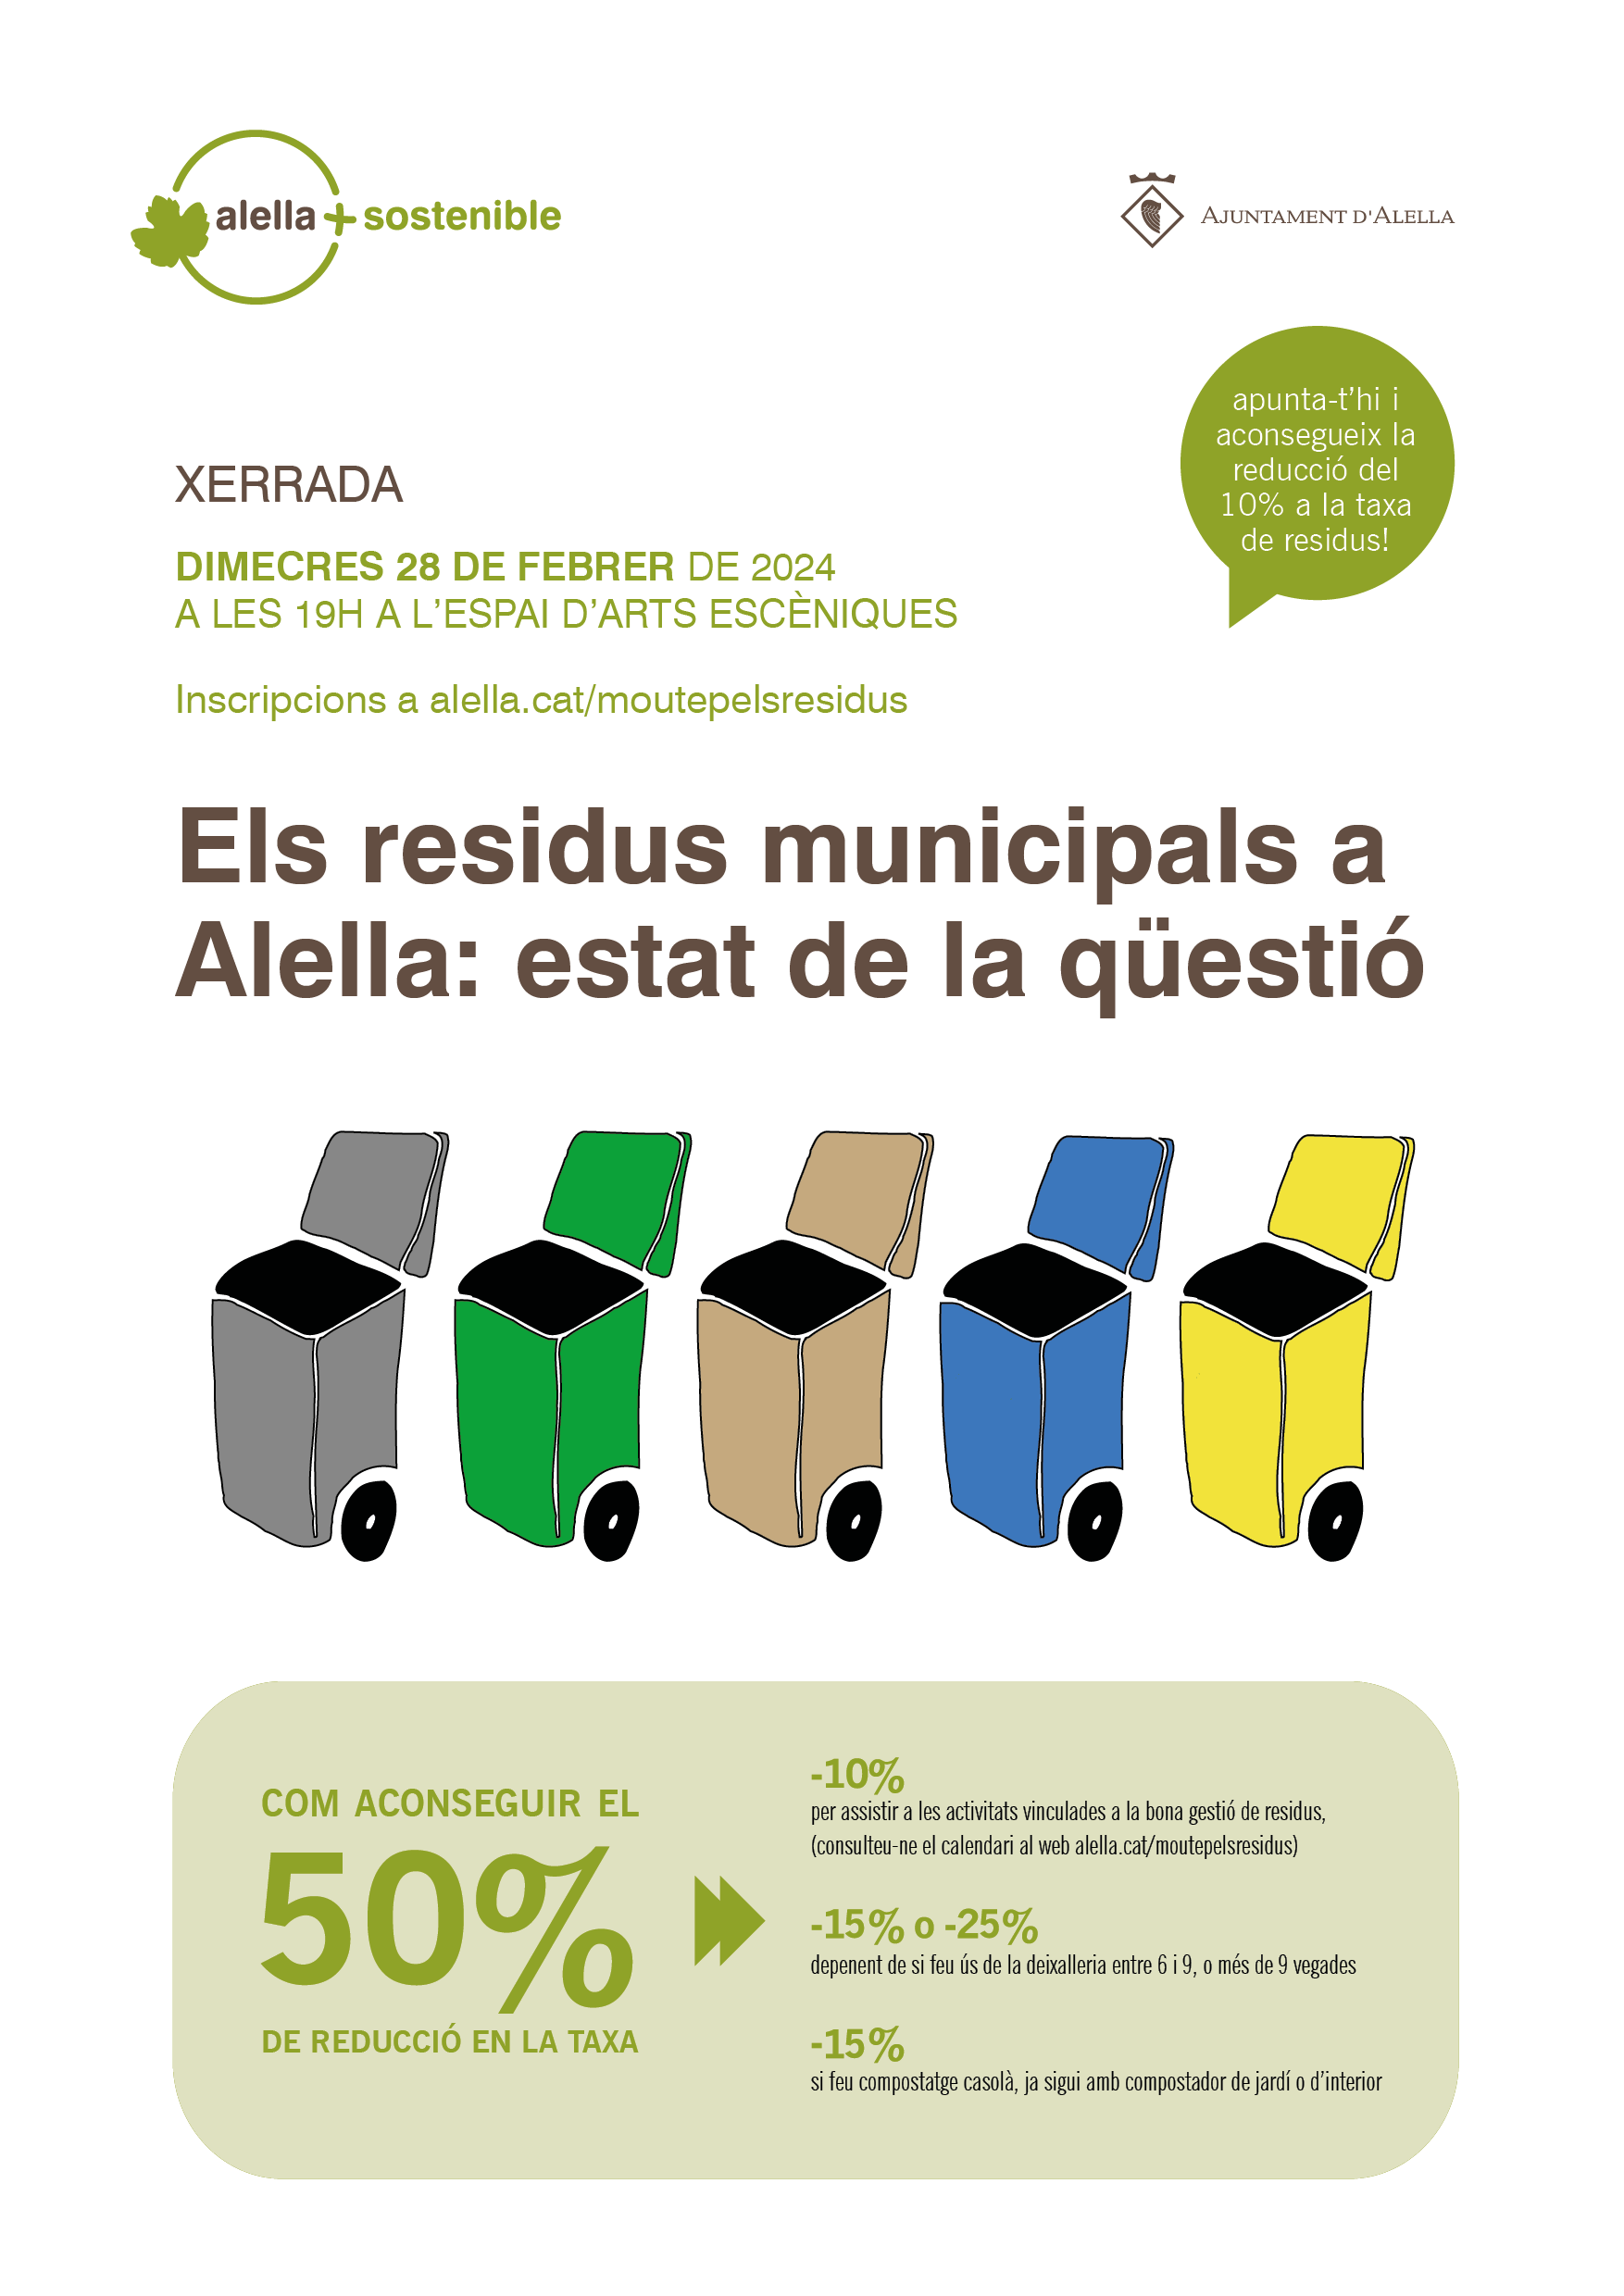 Xerrada "Els residus municipals a Alella: estat de la qesti"